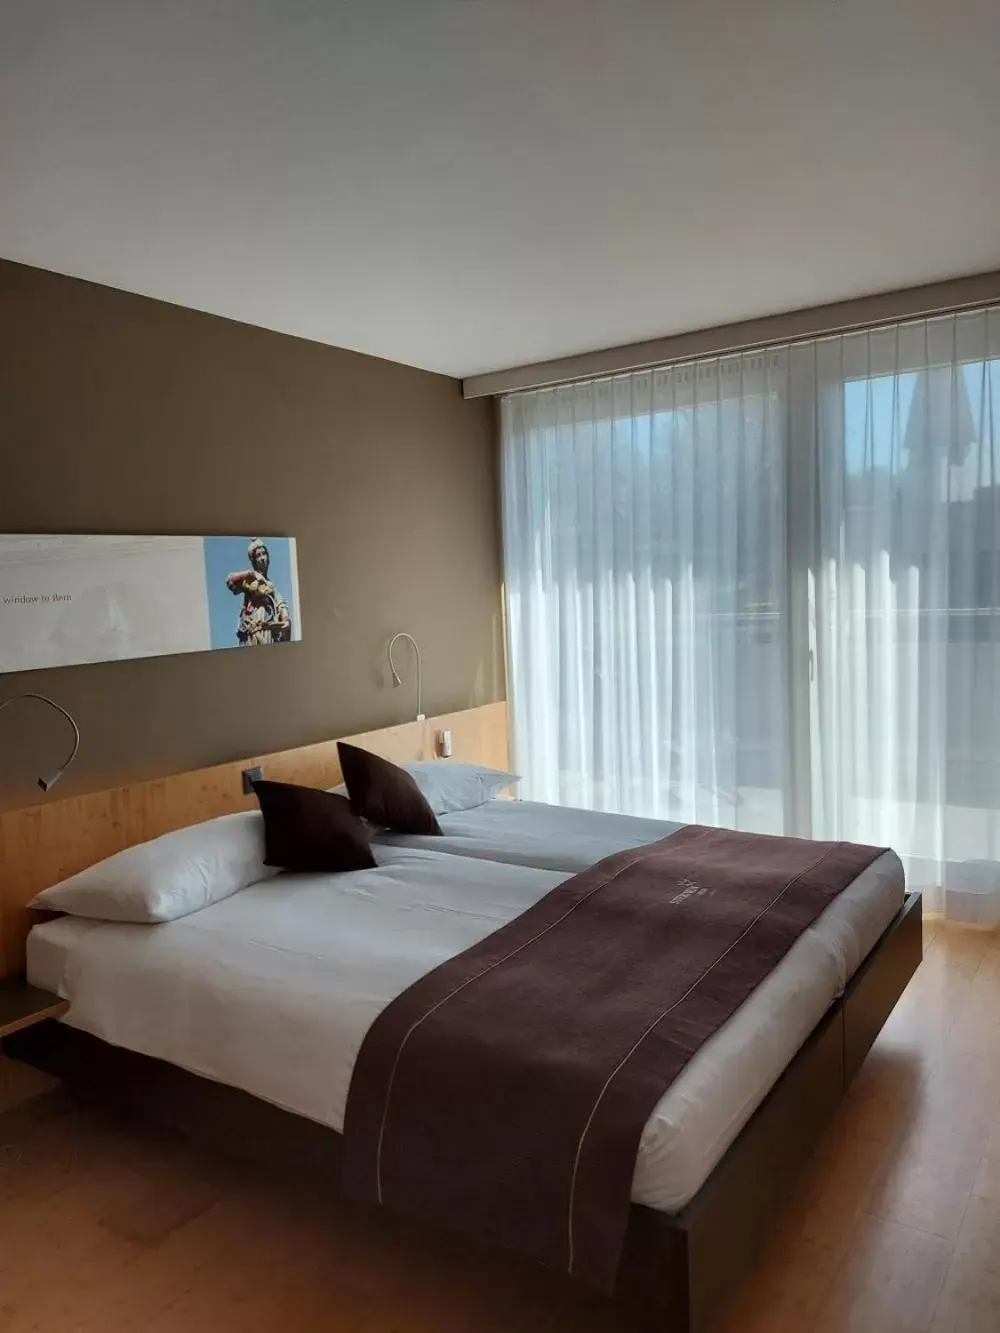 Bed in Hotel & Restaurant STERNEN MURI bei Bern